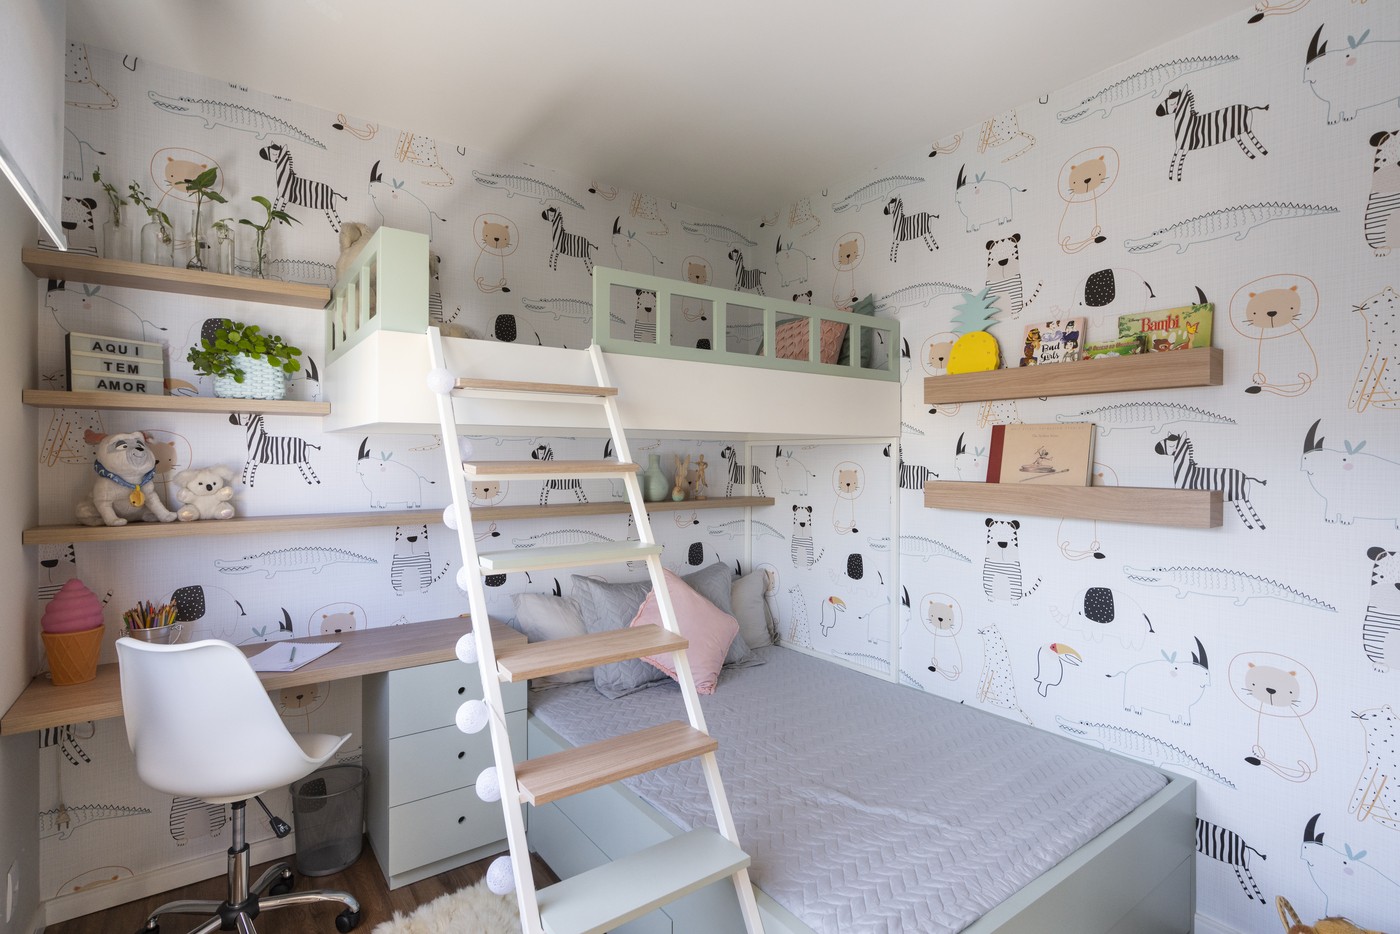 Décor do dia: quarto infantil com beliche, papel de parede e base neutra (Foto: Cristiano Bauce)